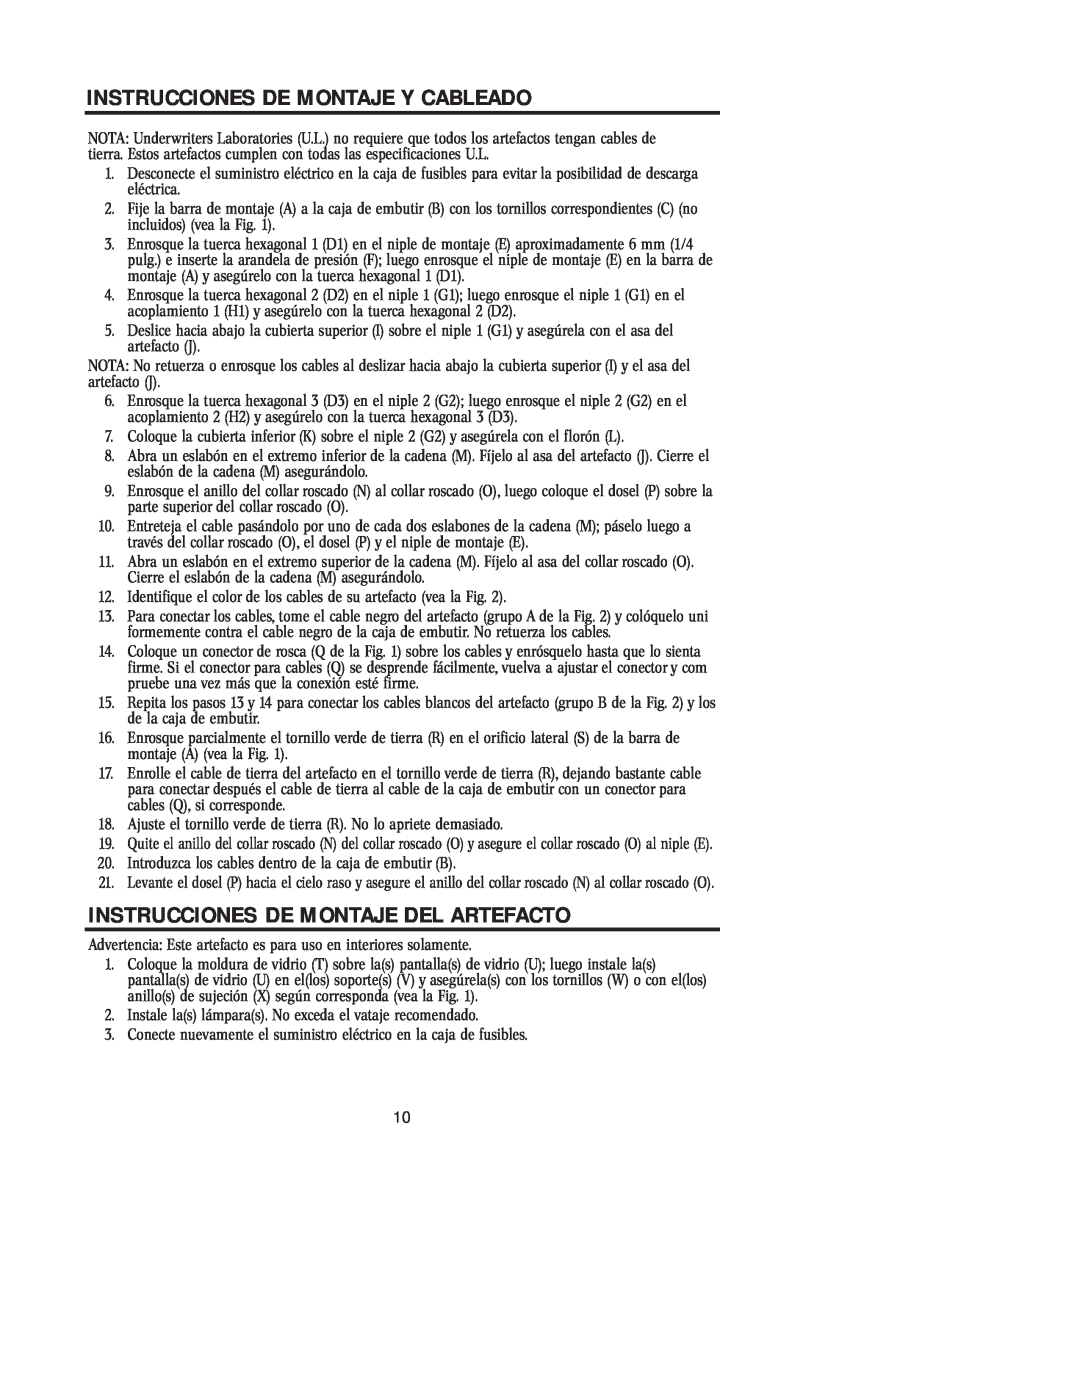 Westinghouse W-194, 31705 owner manual Instrucciones De Montaje Y Cableado, Instrucciones De Montaje Del Artefacto 